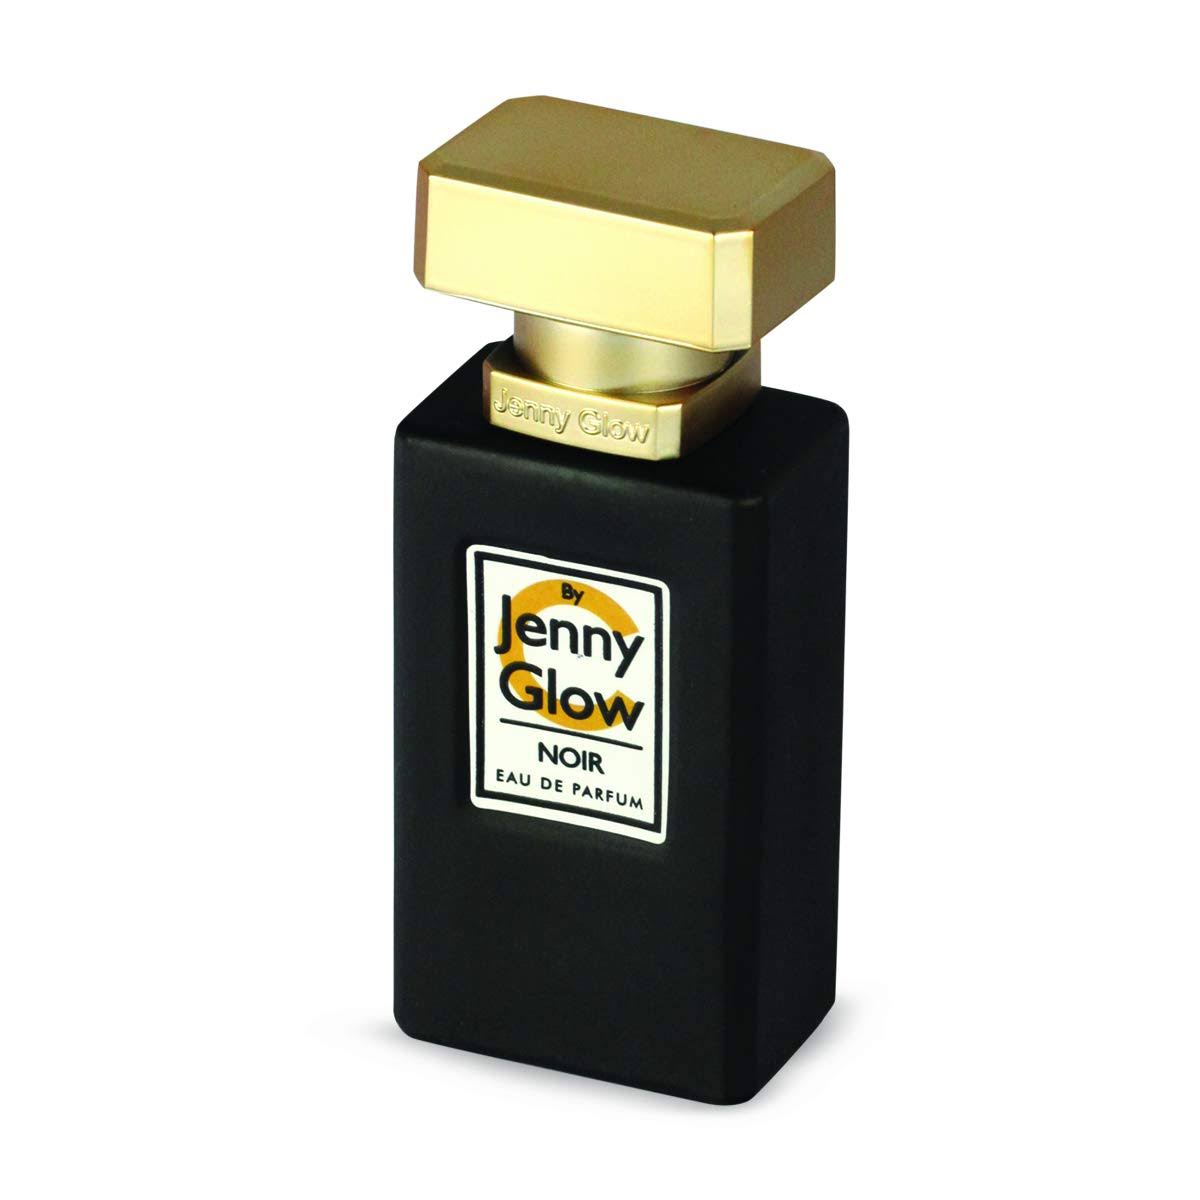 Jenny Glow Noir - Eau De Parfum 80 ml